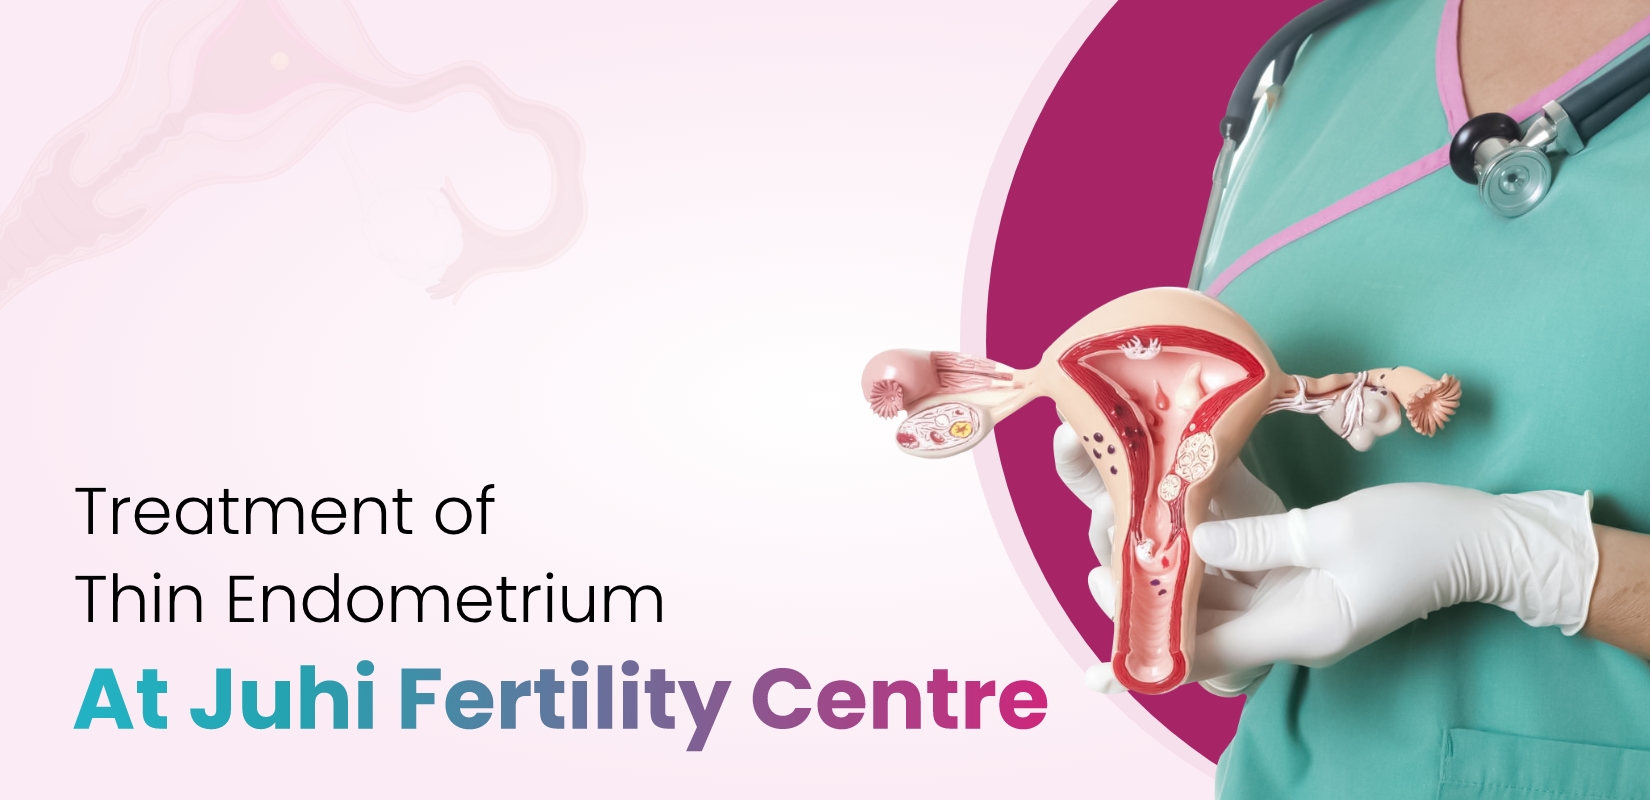 Treatment of Thin Endometrium At Juhi Fertility Centre 